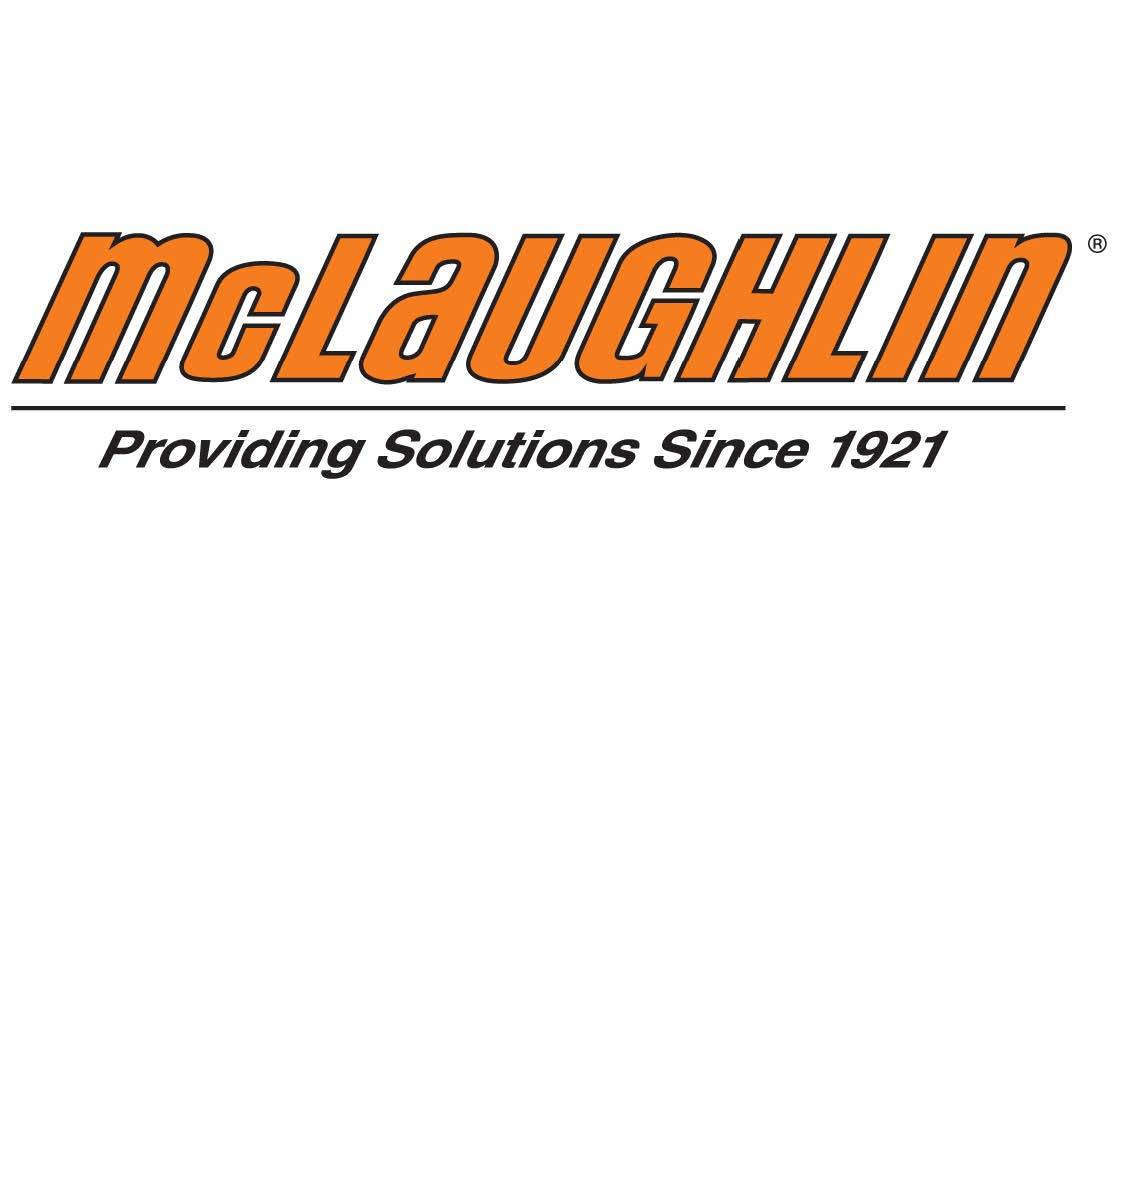 McLaughlin Logo - McLaughlin Logo jpeg - McLaughlin